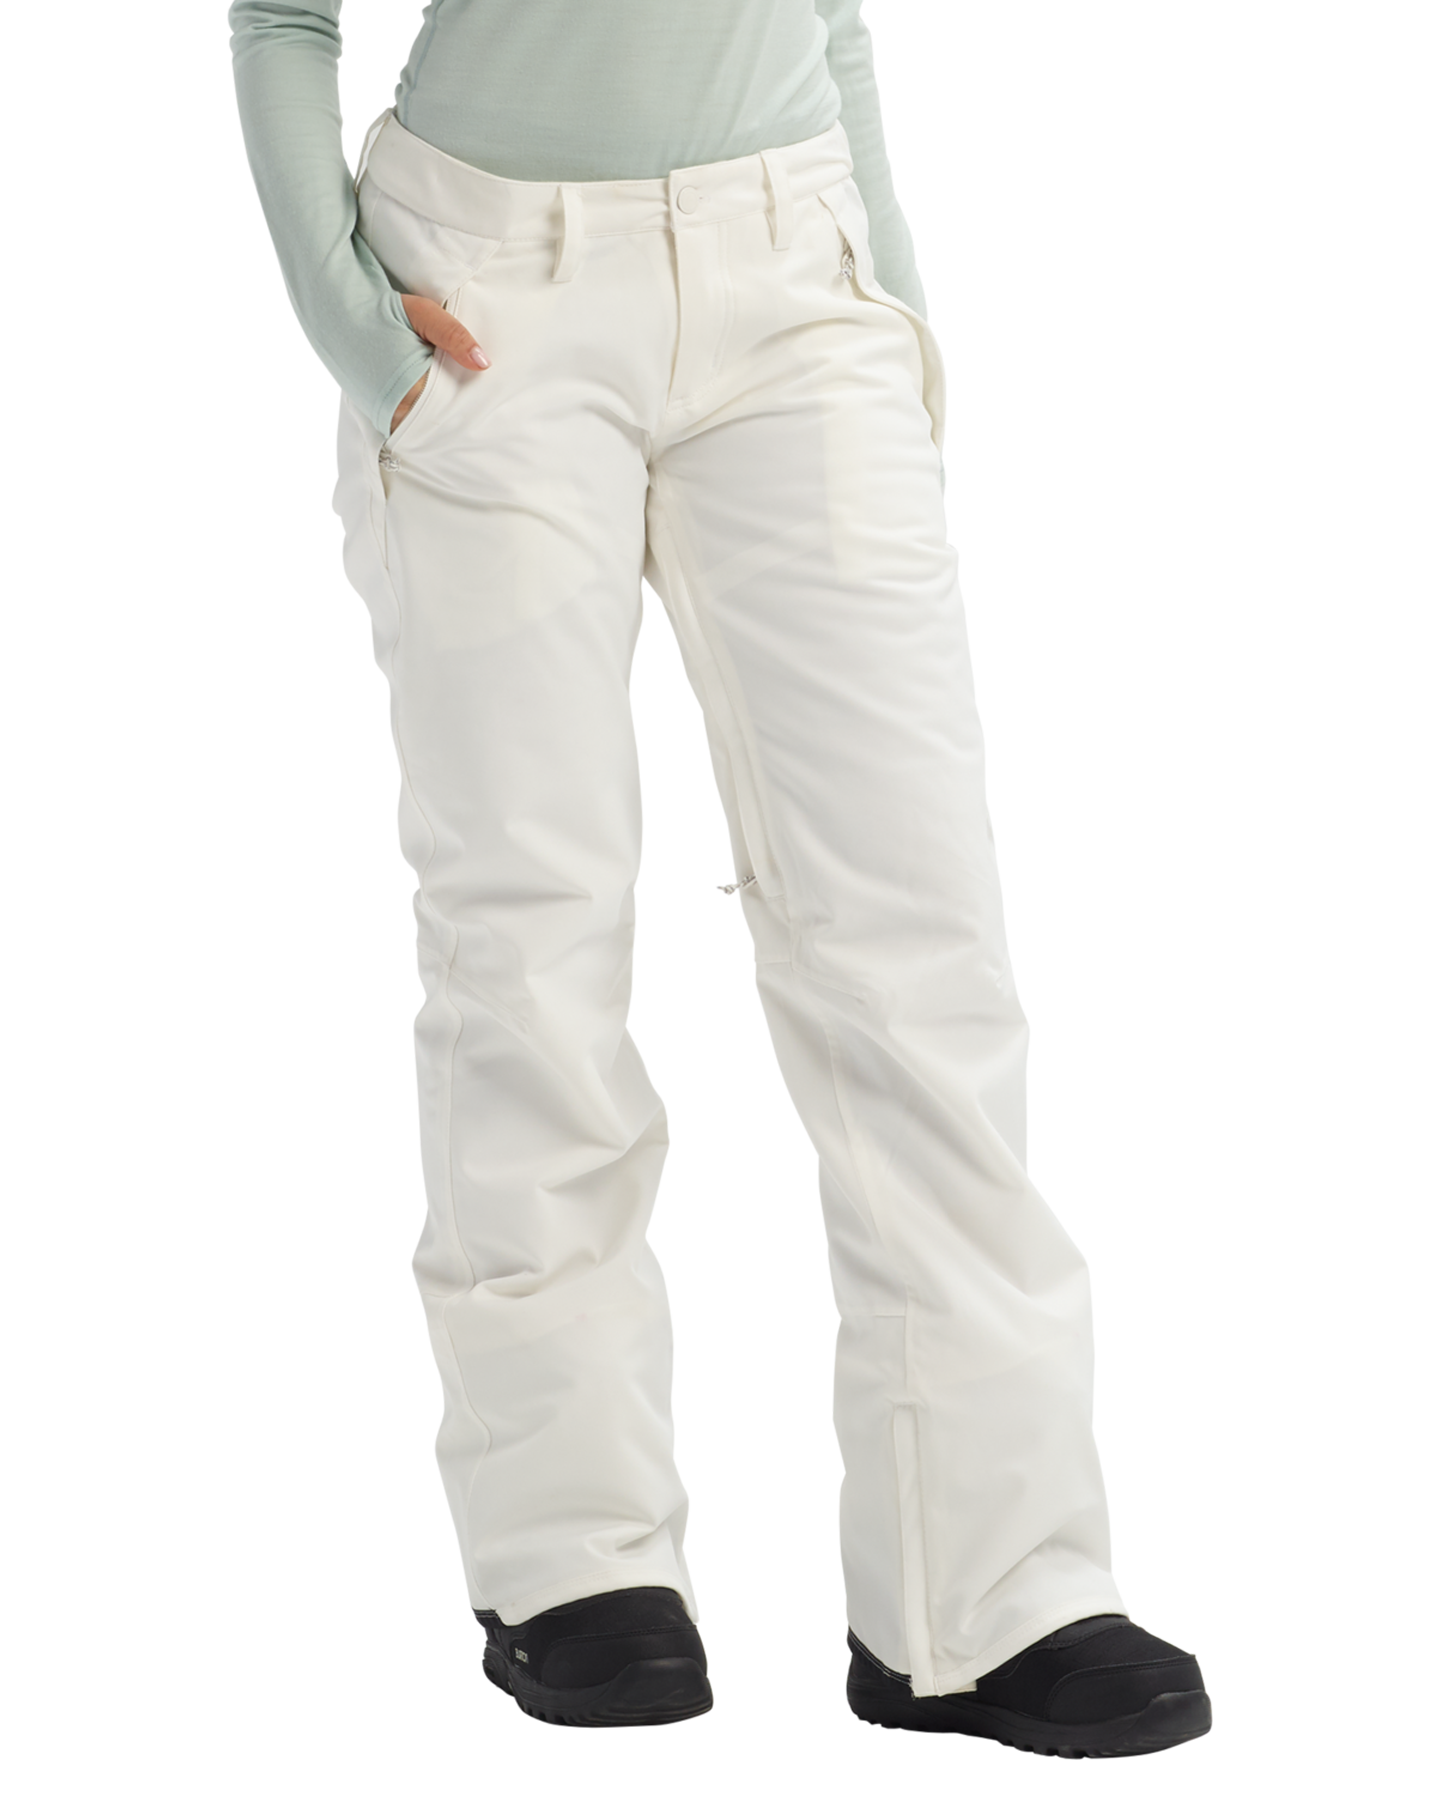 Burton Women's Society Snow Pants - Stout White Women's Snow Pants - Trojan Wake Ski Snow